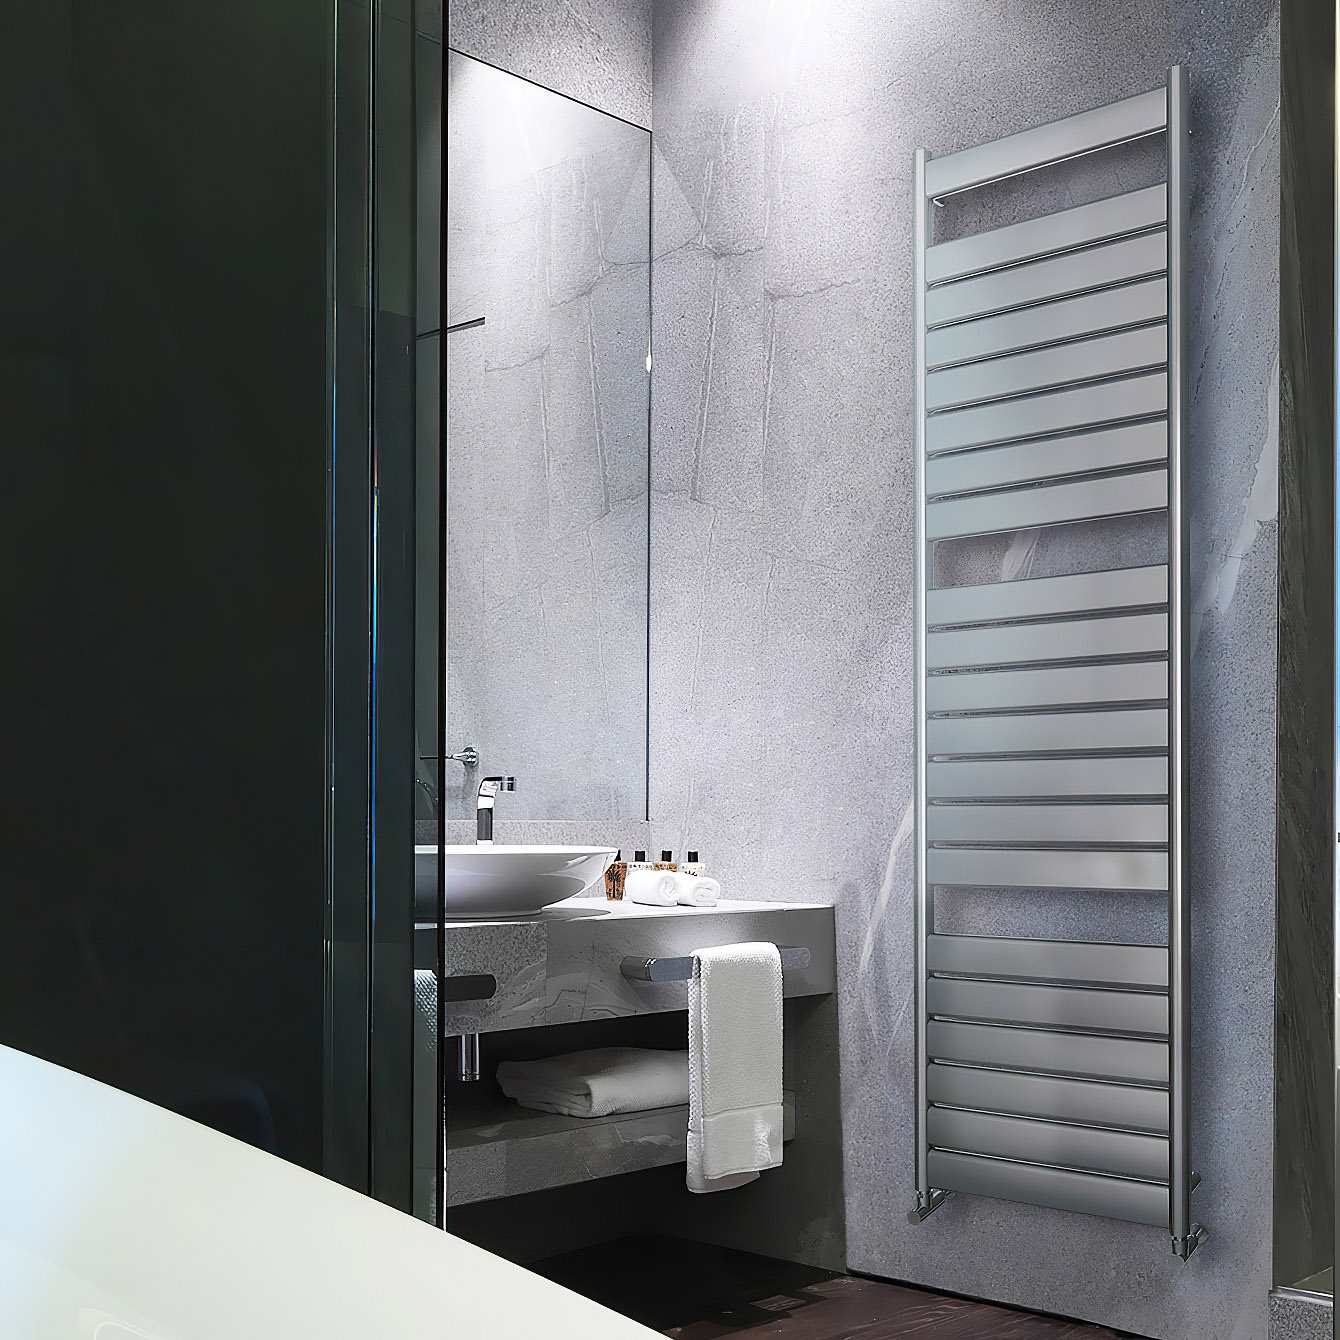 Vega Bath - Stilvoller K8 Handtuchwärmer aus Aluminium | Radiamo